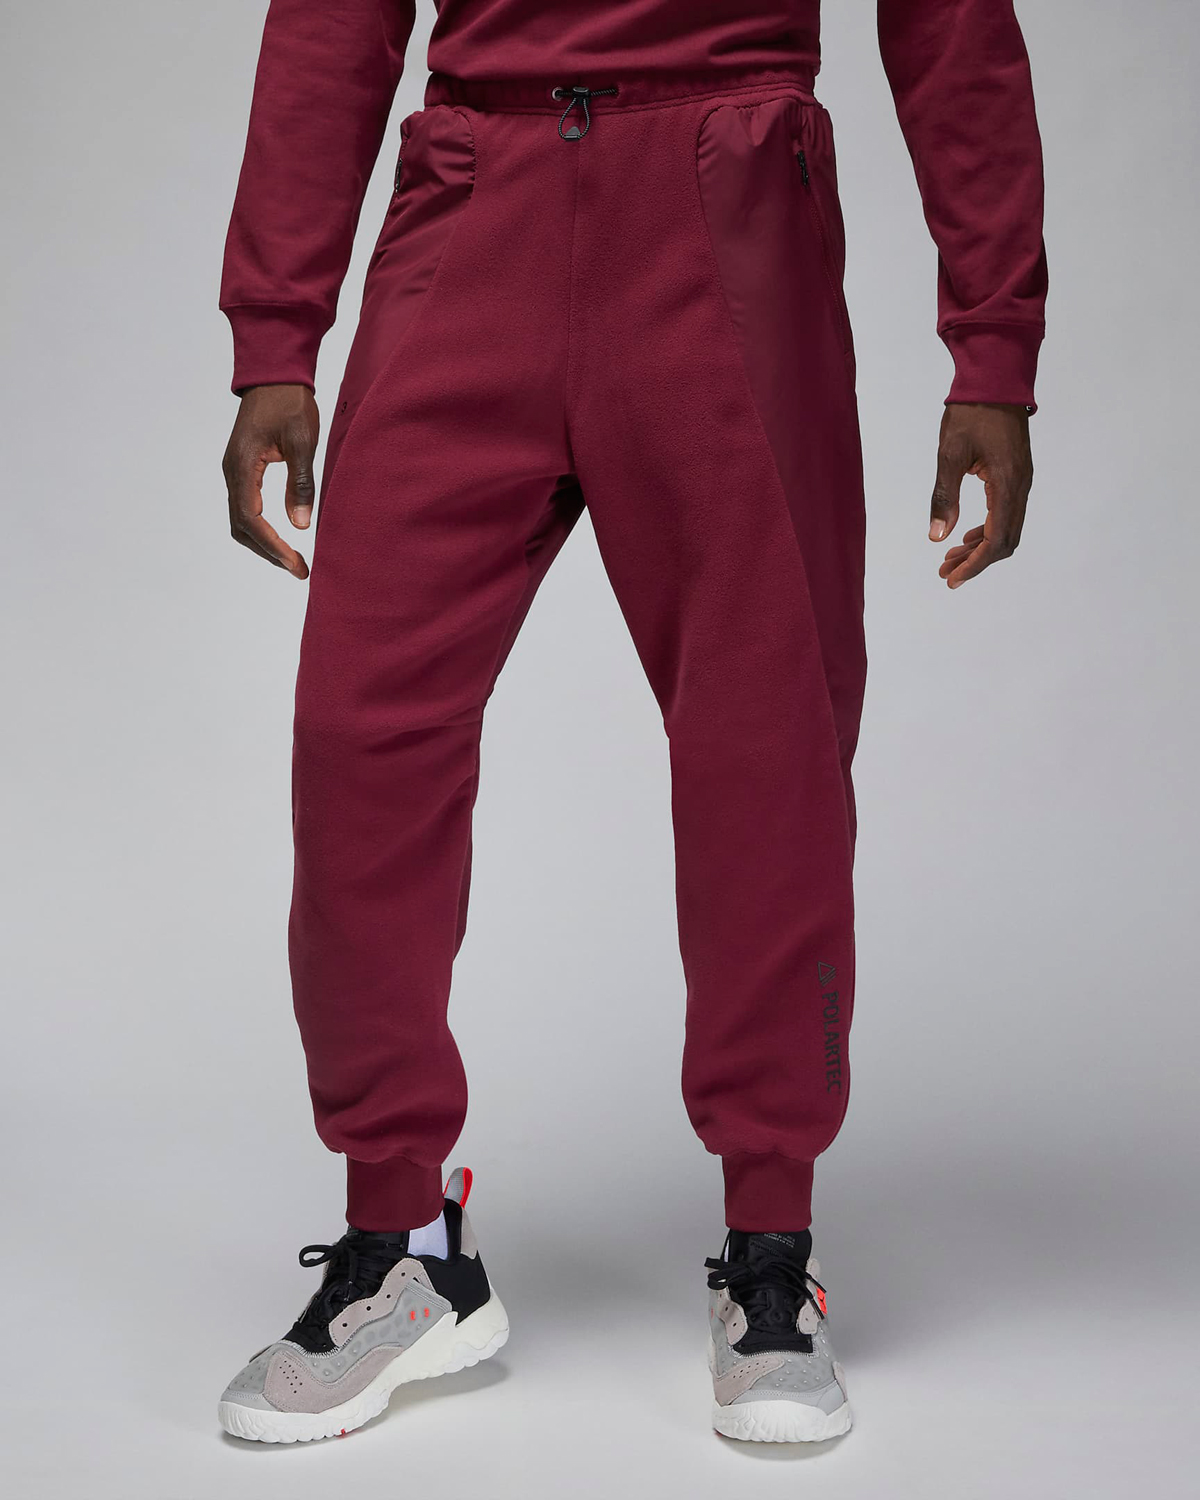 Jordan-23-Engineered-Pants-Cherrywood-Red